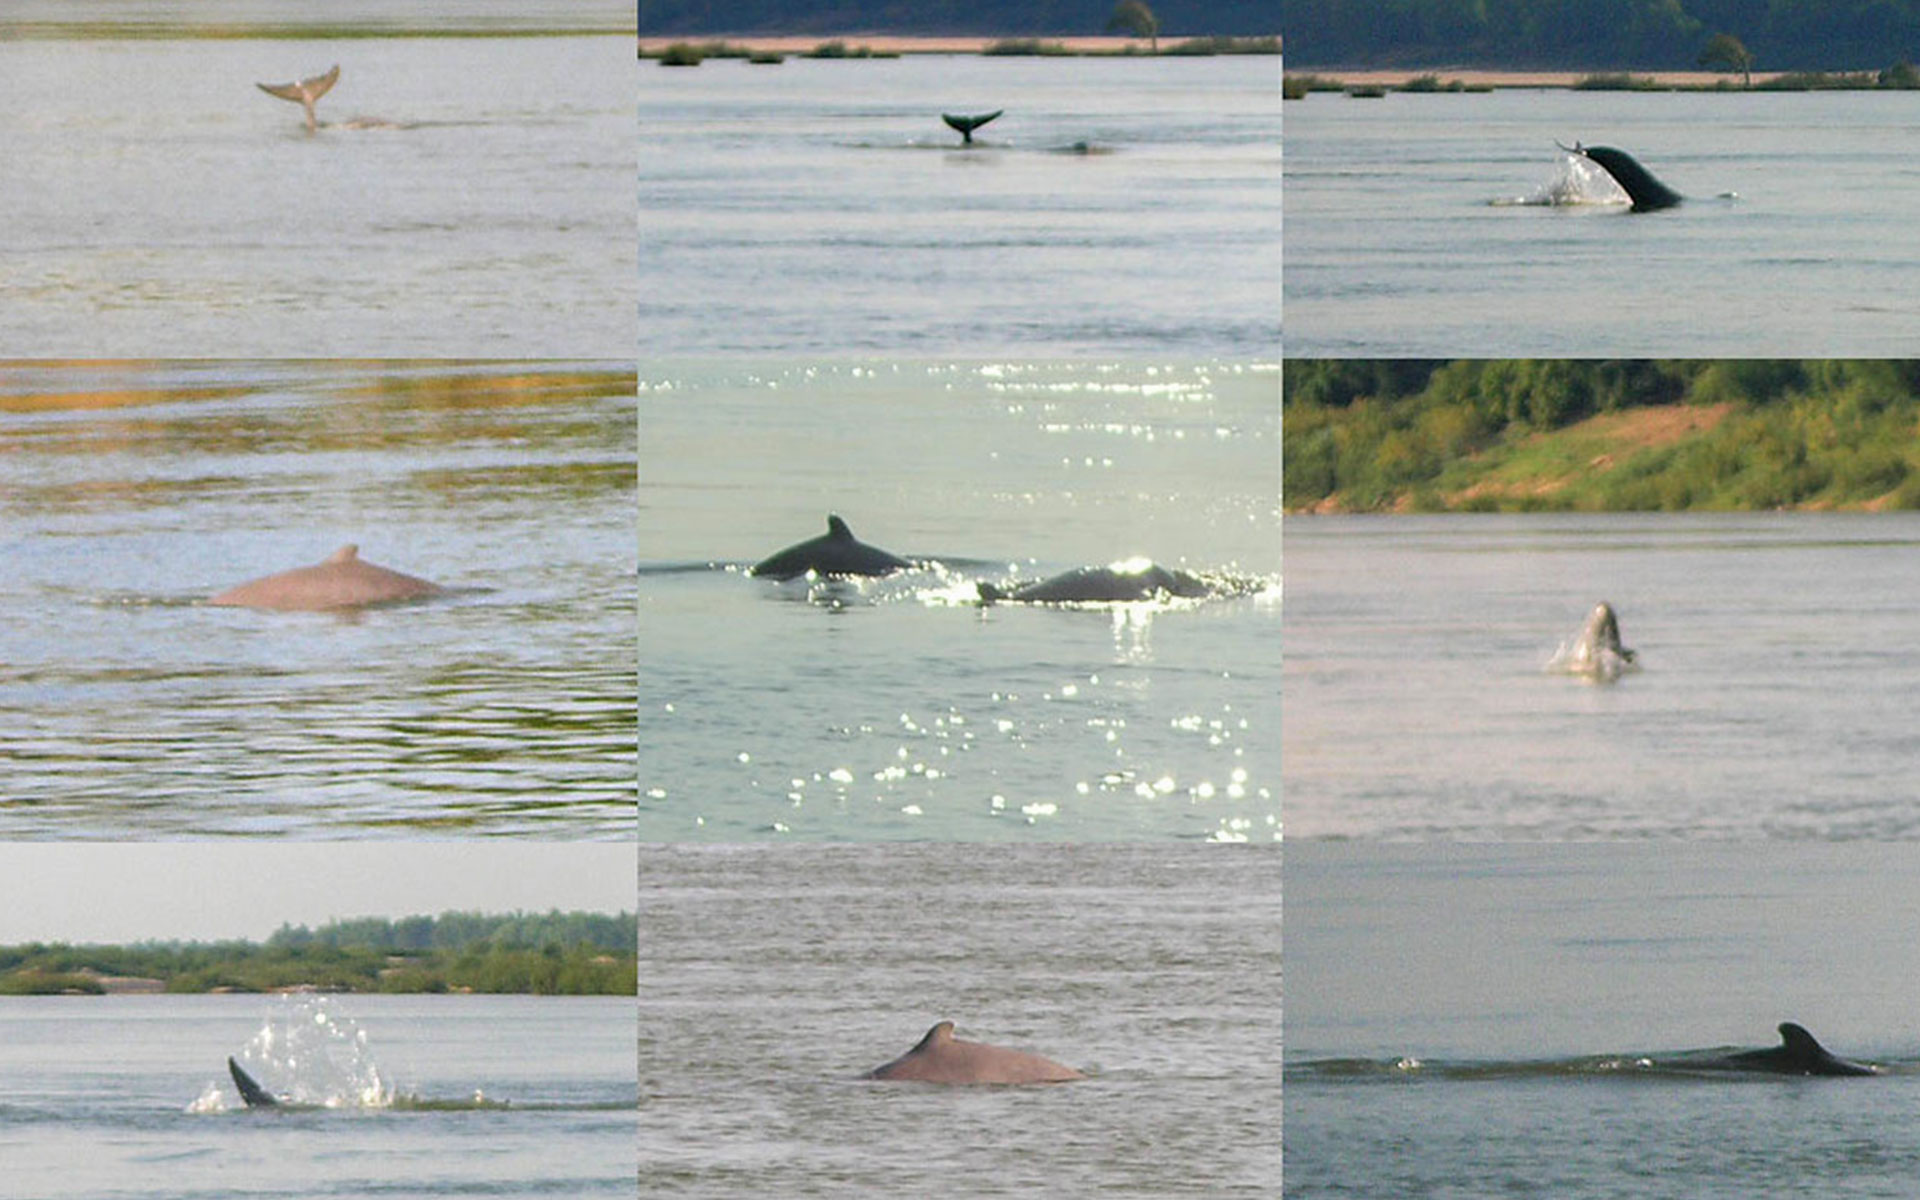 Dolphin Habitat Site - one of top attractions in Kratie